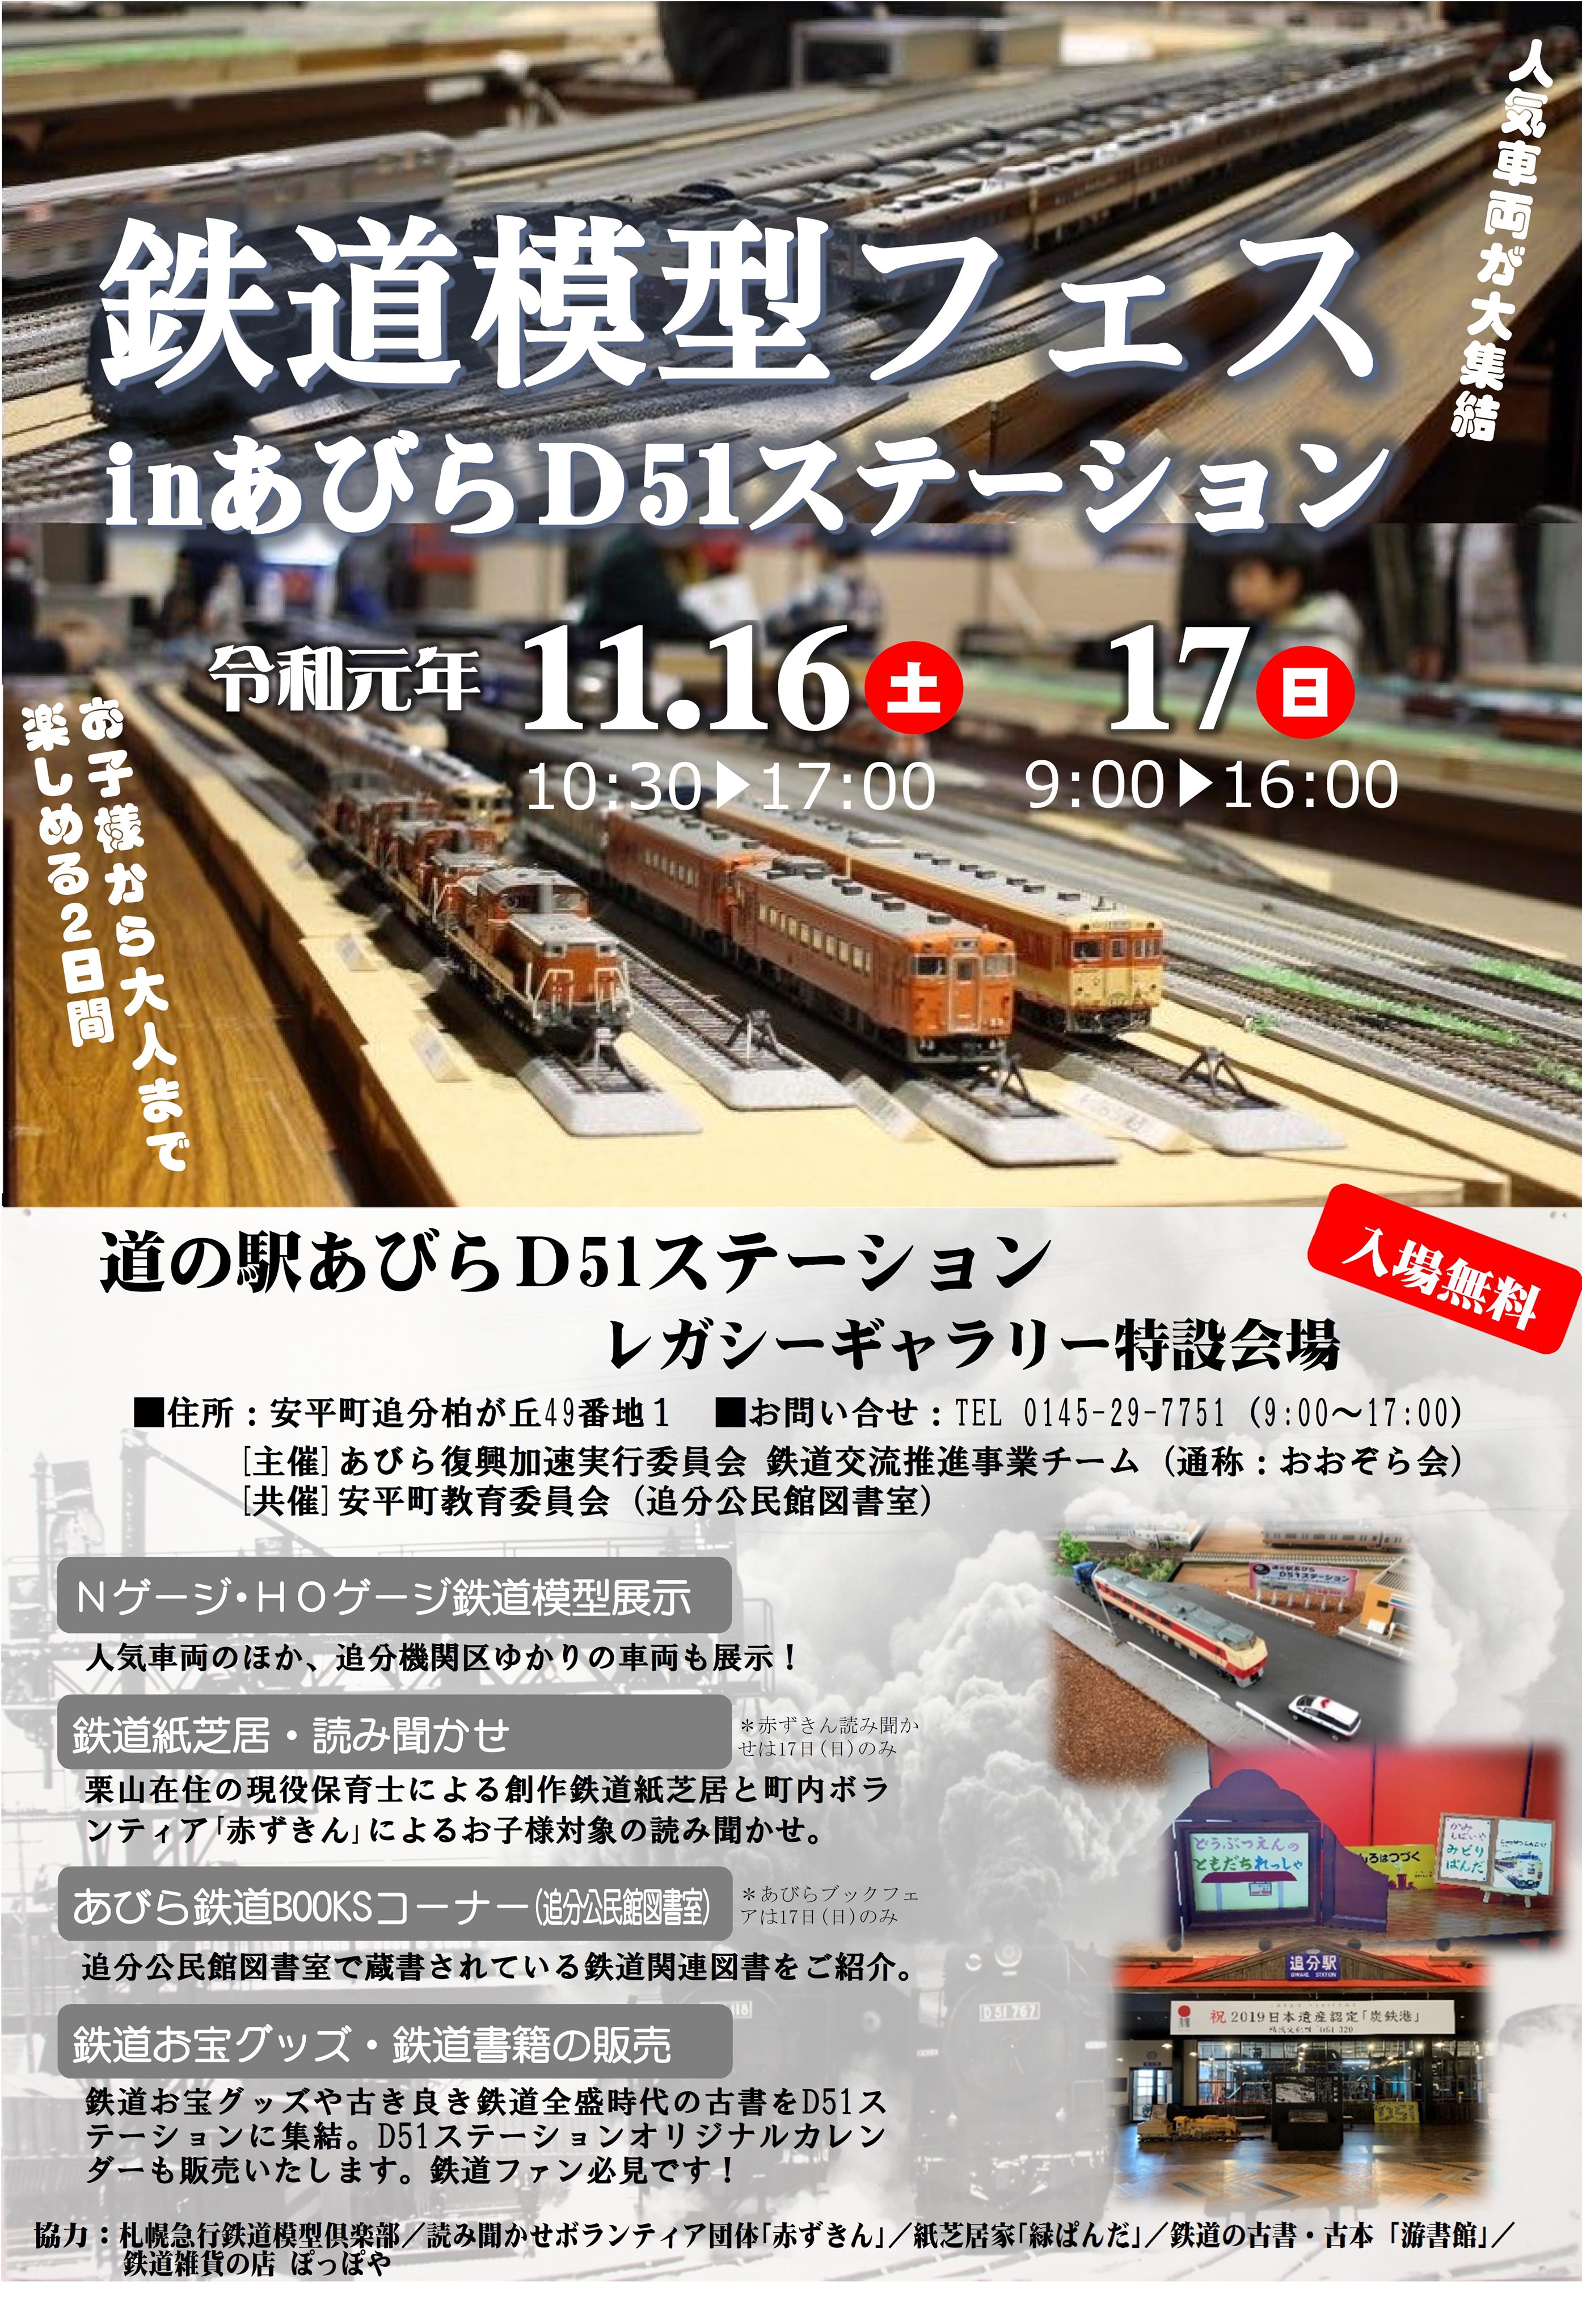 鉄道模型フェス in あびらＤ51ステーション | 道の駅あびら D51 